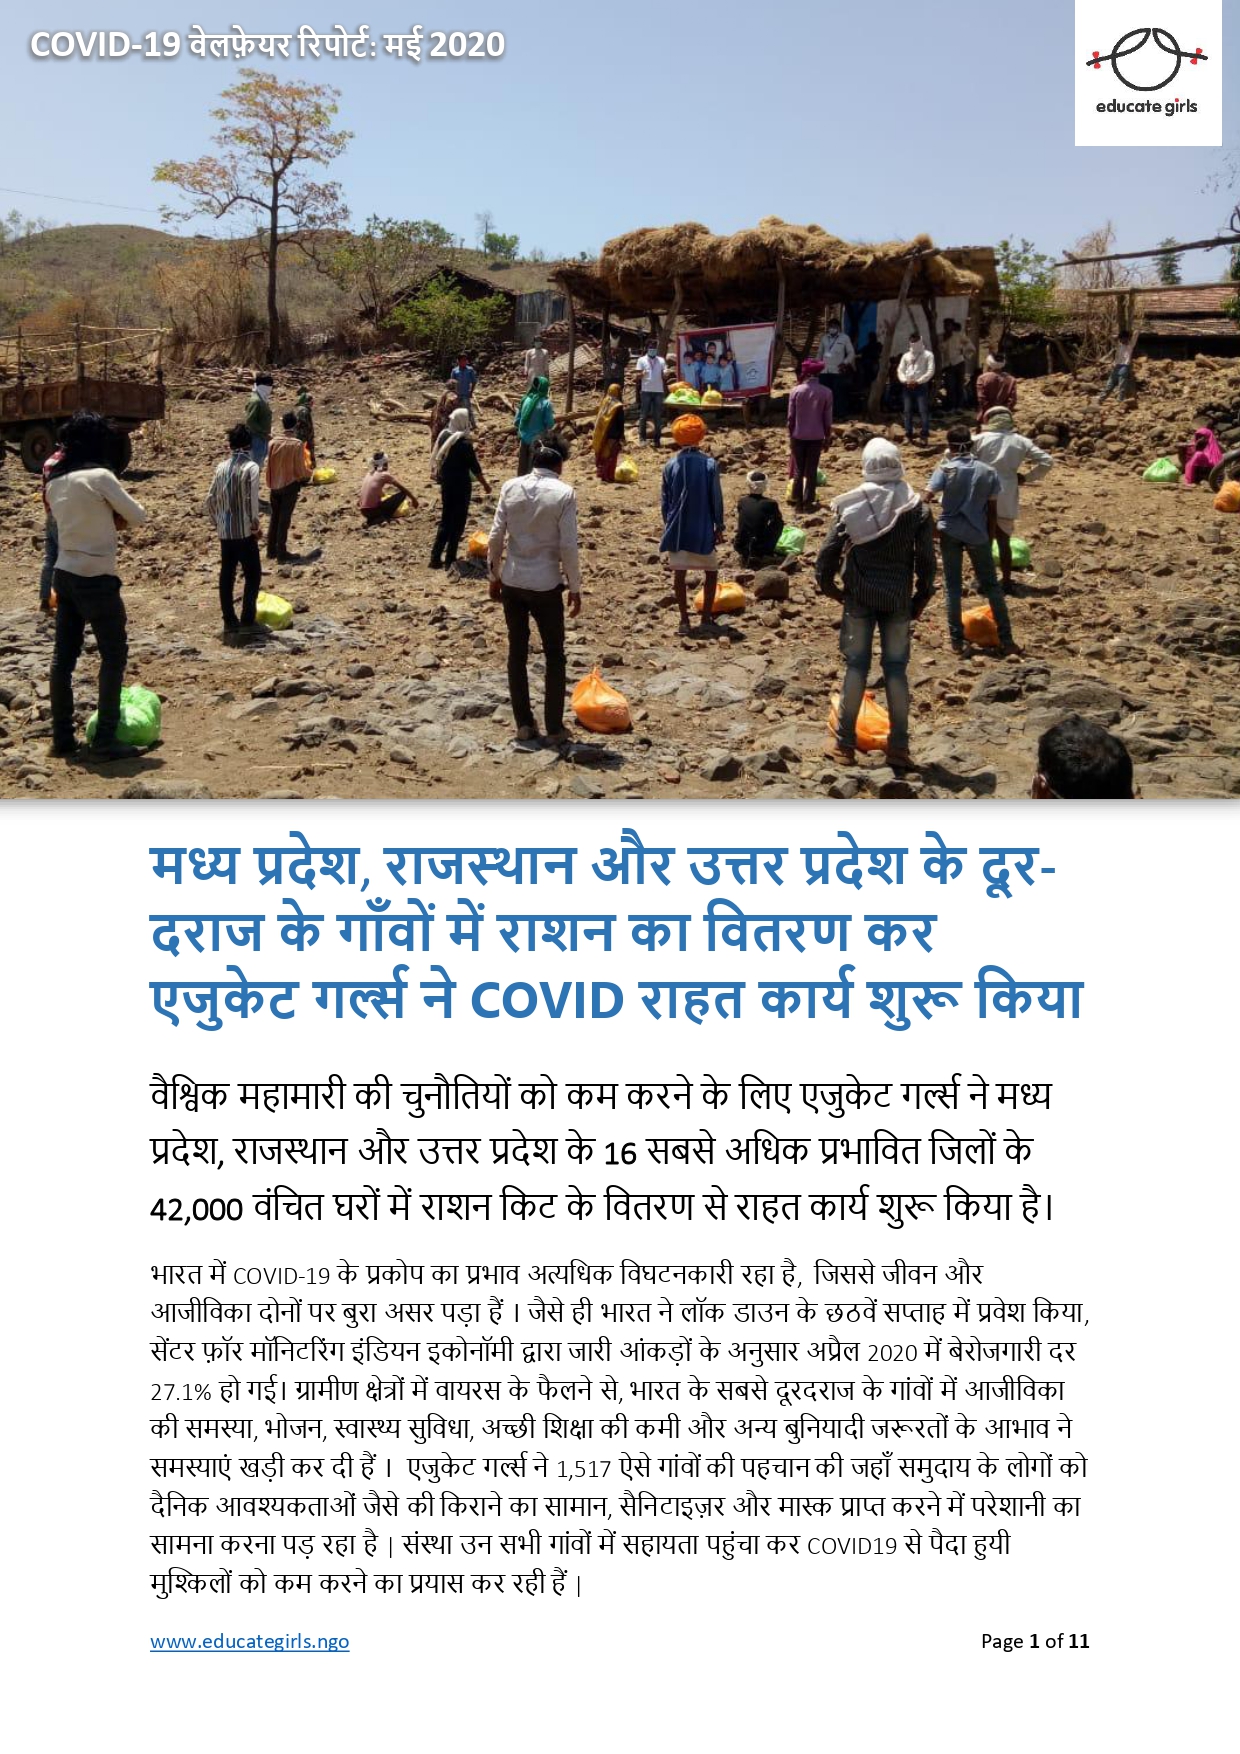 मध्य प्रदेश, राजस्थान और उत्तर प्रदेश के दूर-दराज के गाँवों में राशन का वितरण कर एजुकेट गर्ल्स ने Covid राहत कार्य शुरू किया